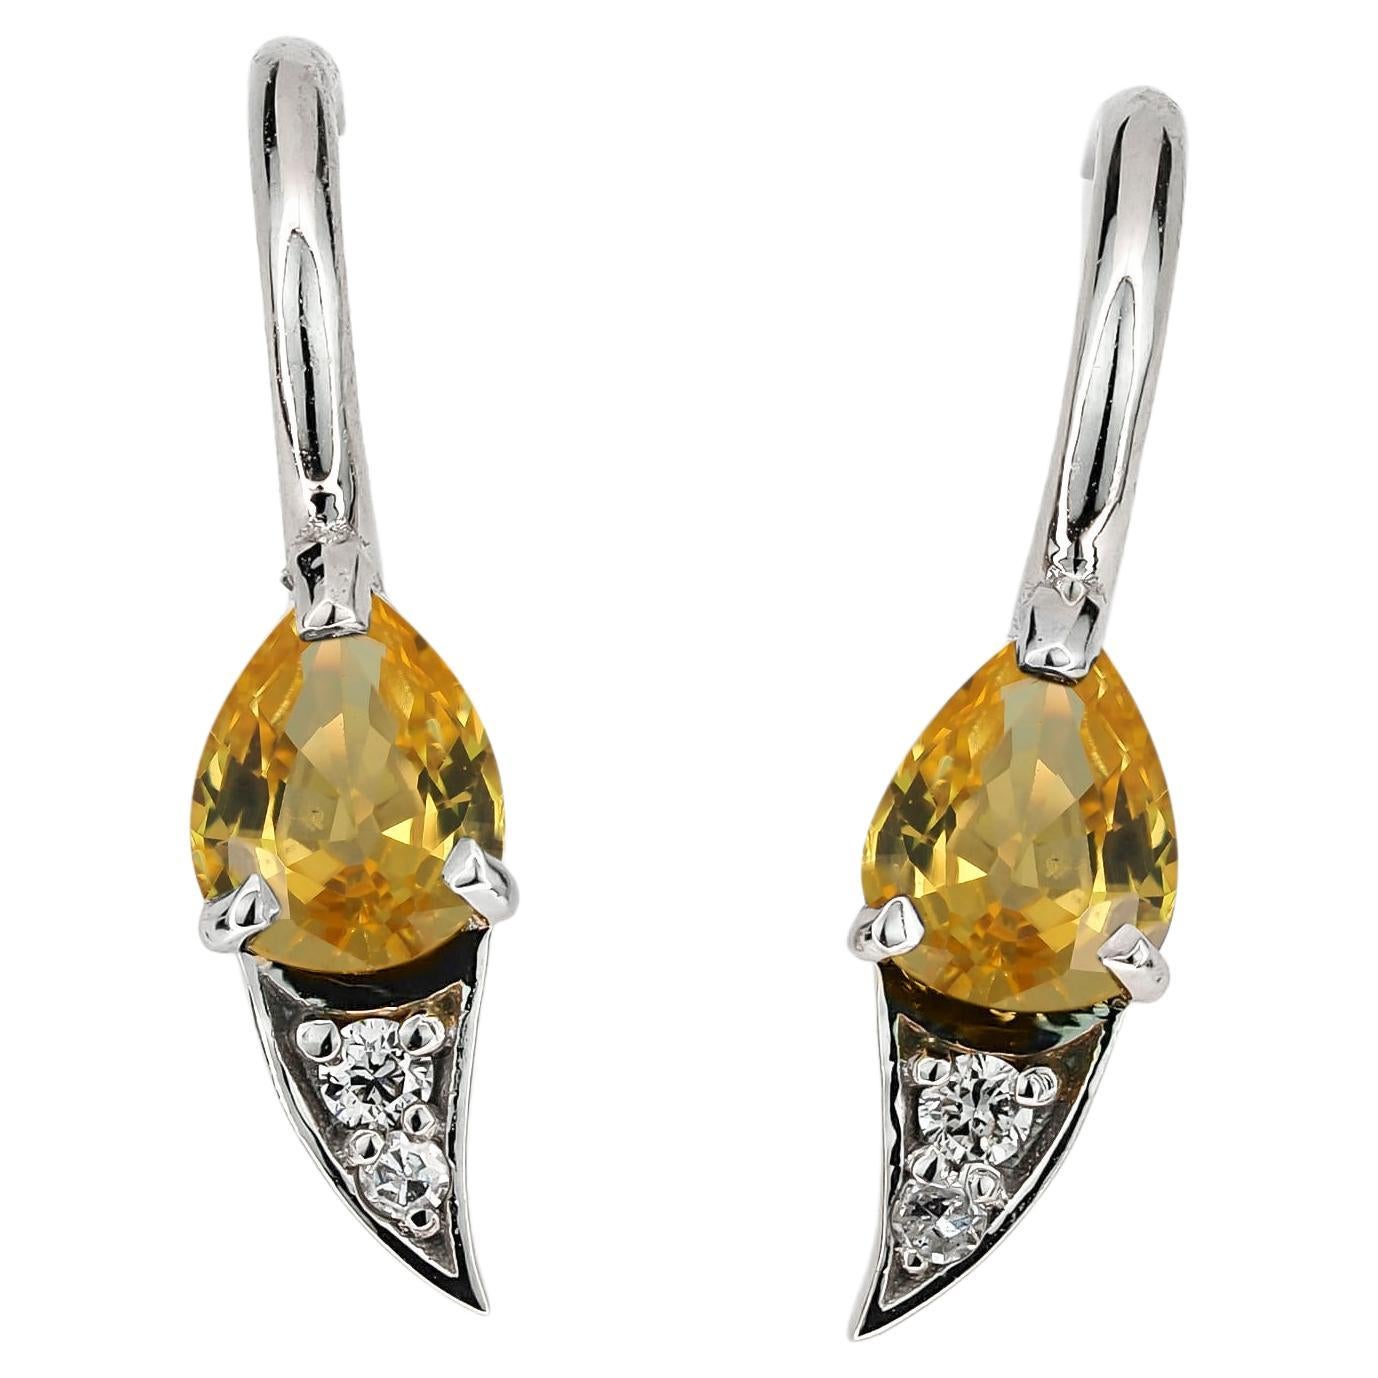 Boucles d'oreilles en or 14k avec saphir naturel et diamants. 